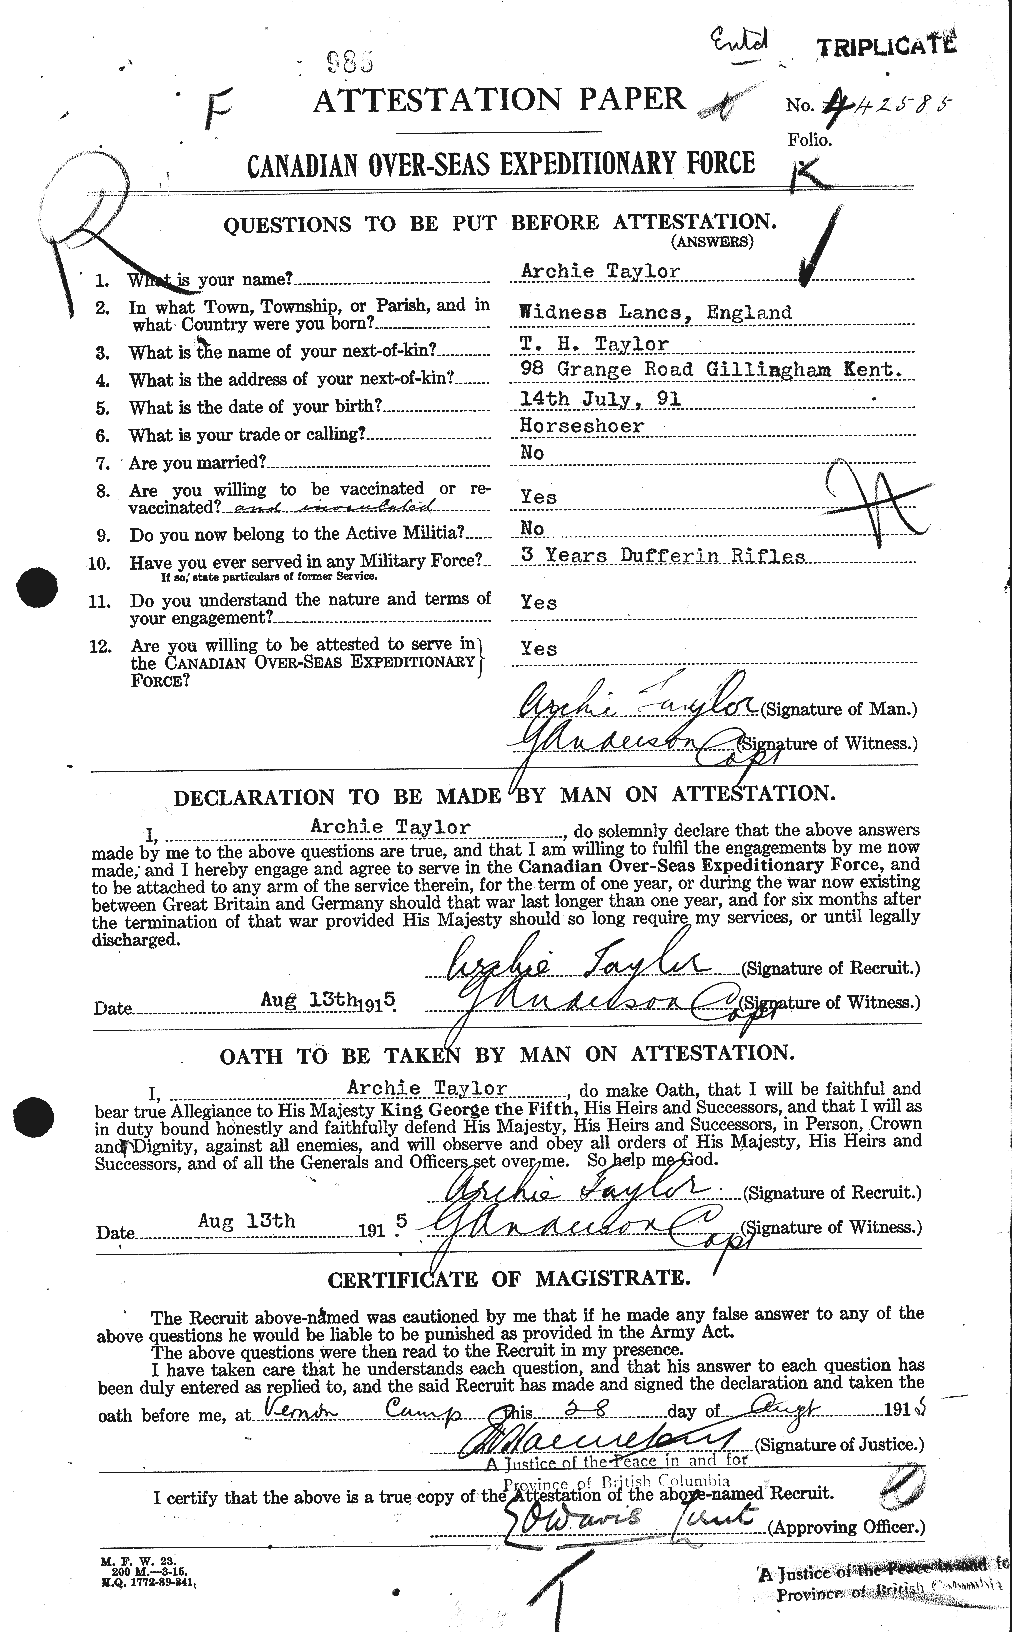 Dossiers du Personnel de la Première Guerre mondiale - CEC 626245a